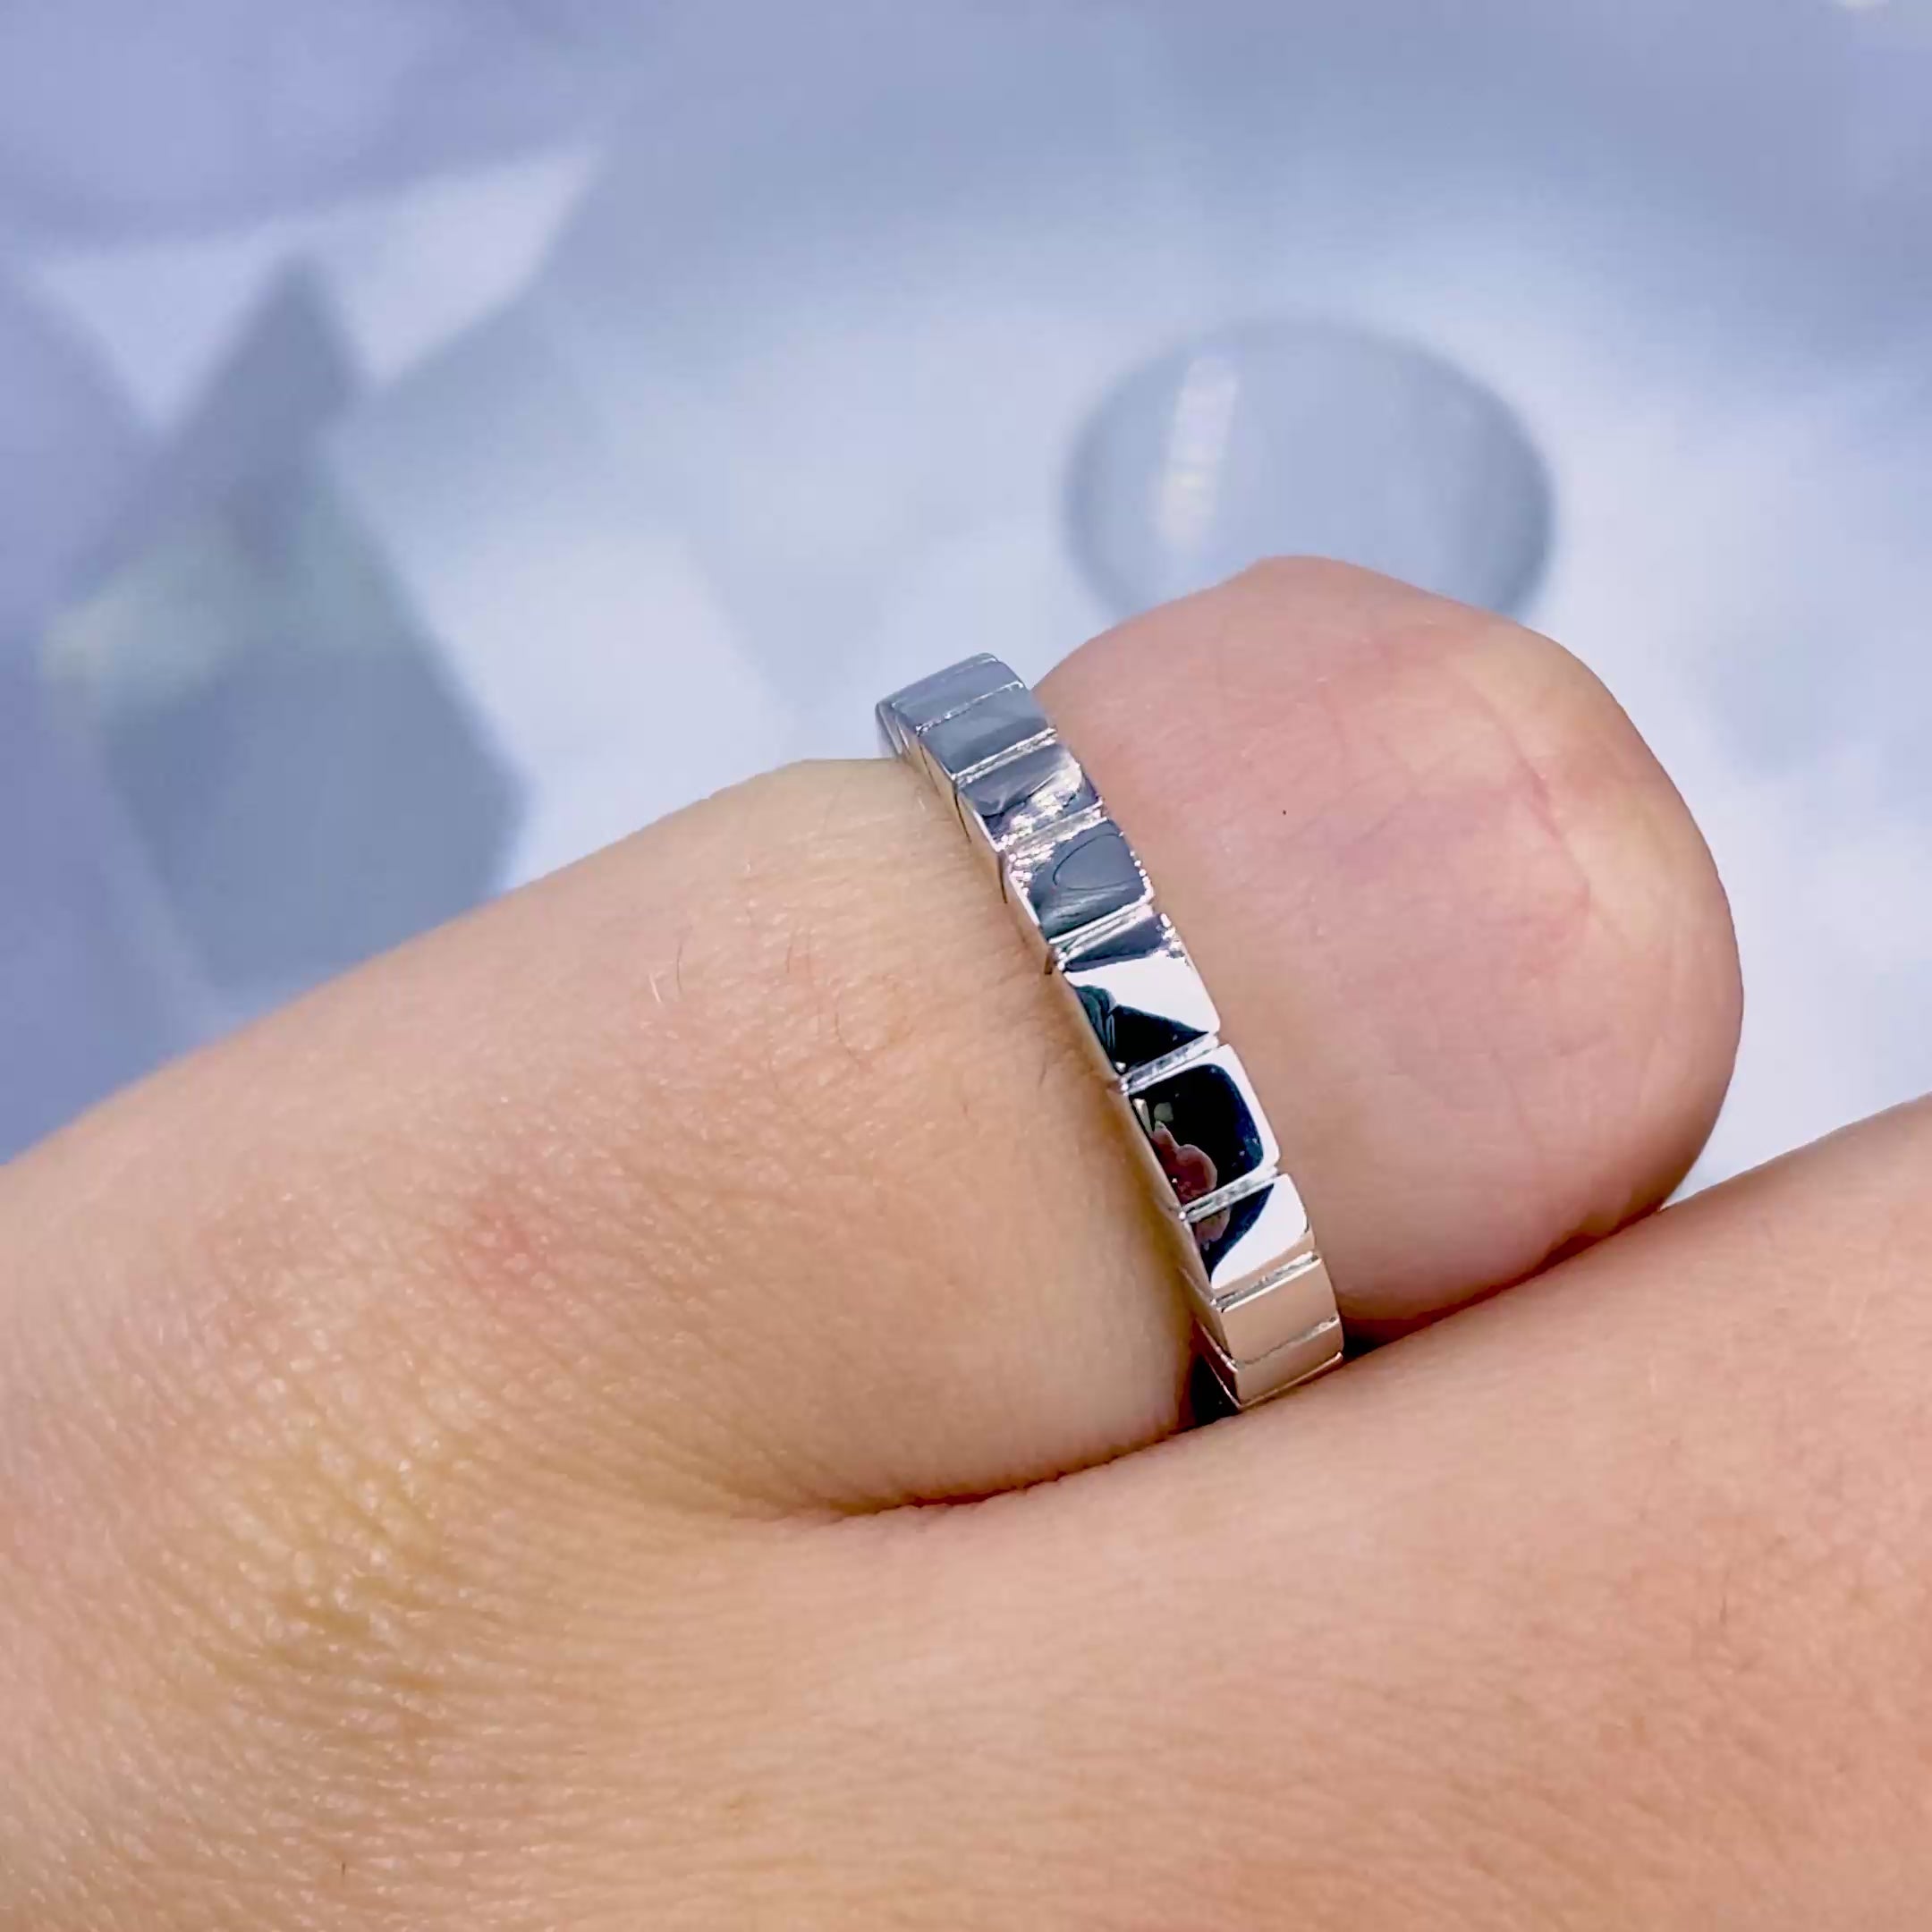 Bargain Plain Wedding Ring in 14KT White Gold